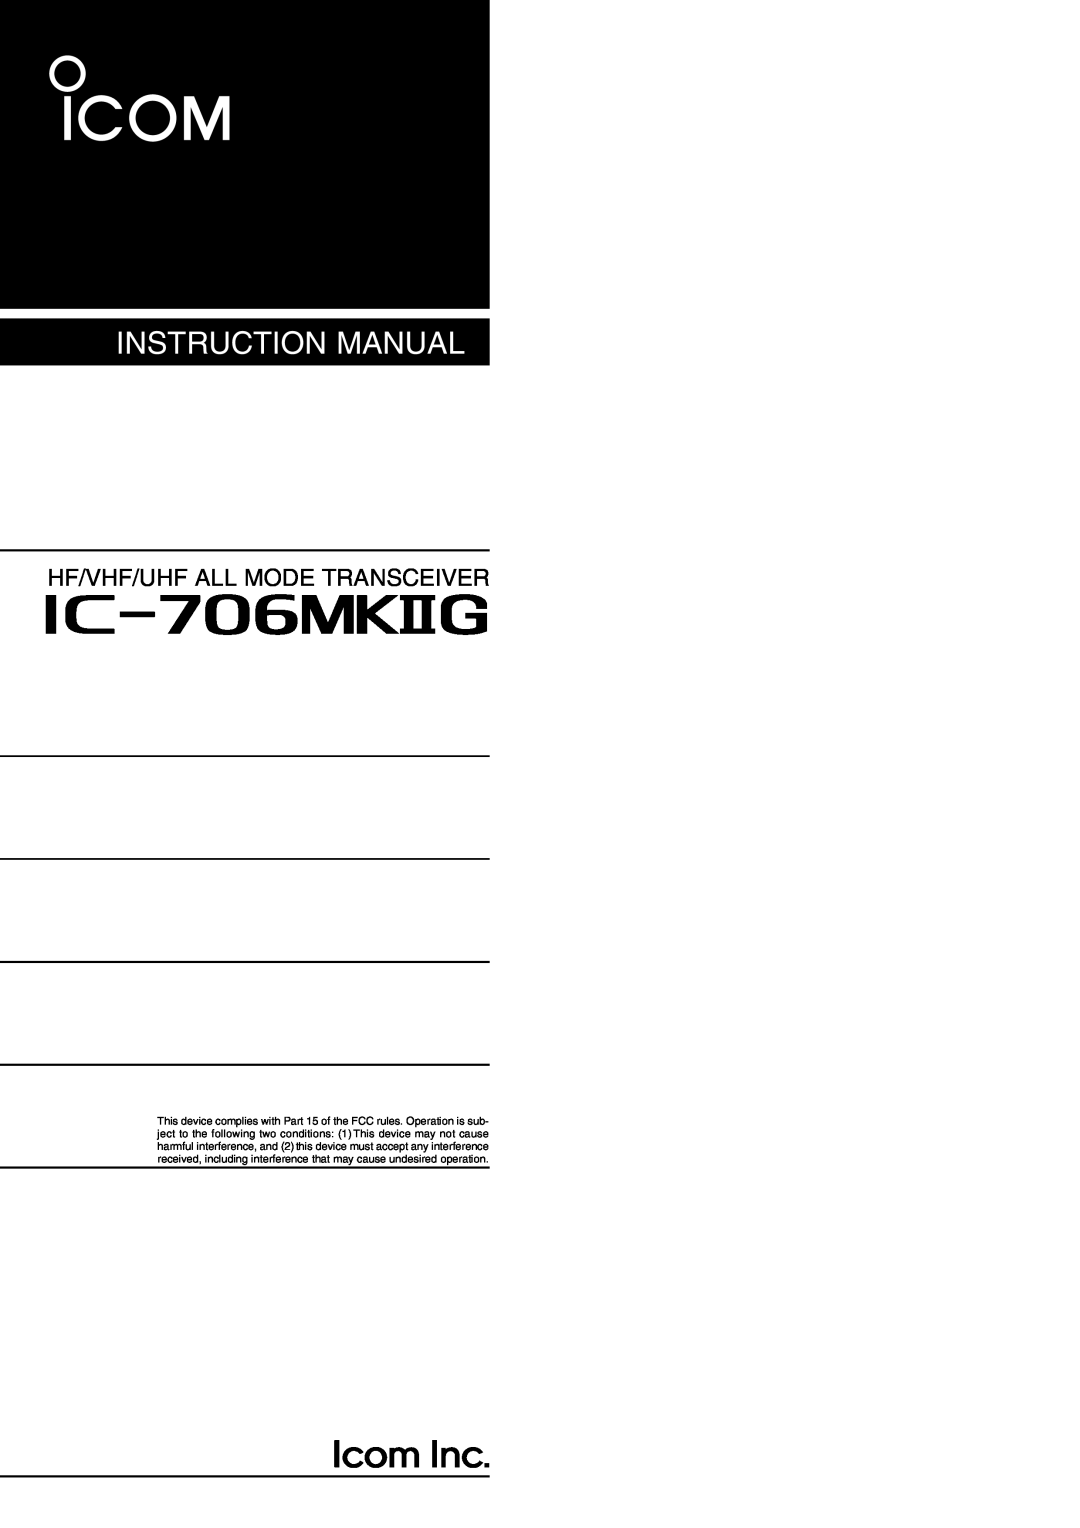 Icom I706MKTMG, IC-706MKIIG instruction manual i706MKG, Instruction Manual, Hf/Vhf/Uhf All Mode Transceiver 